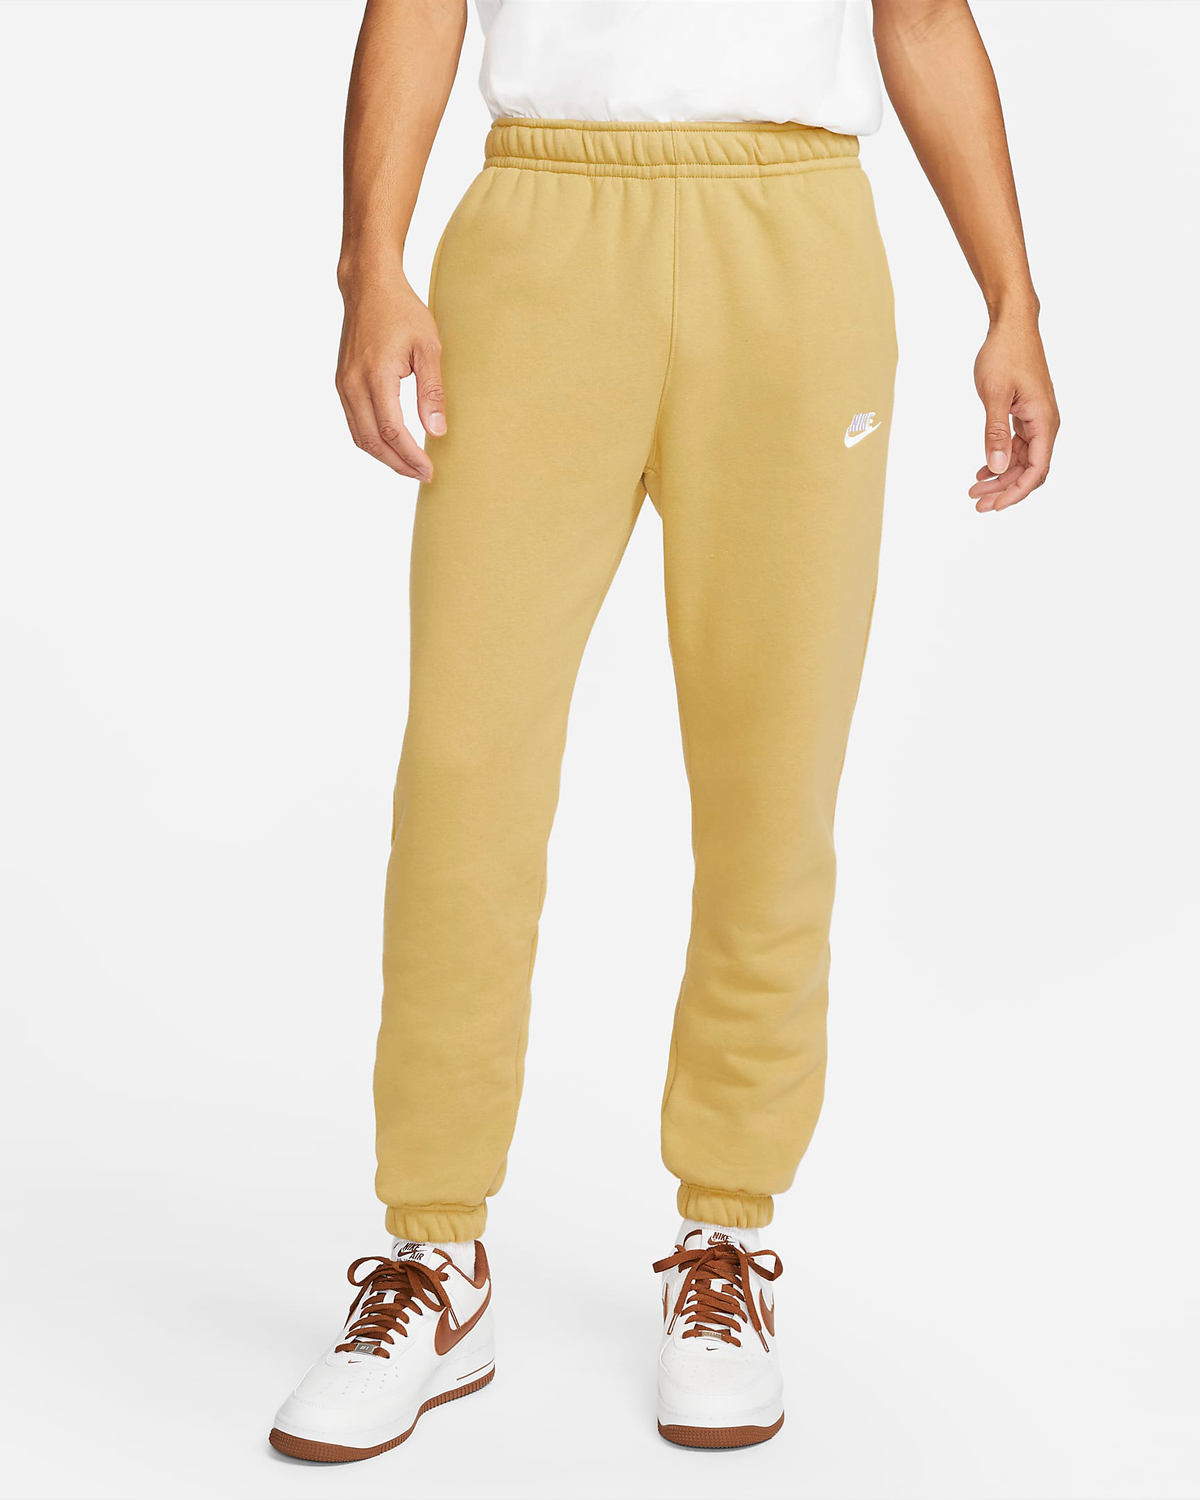 Nike-Sportswear-Club-Fleece-Pants-Wheat-Gold